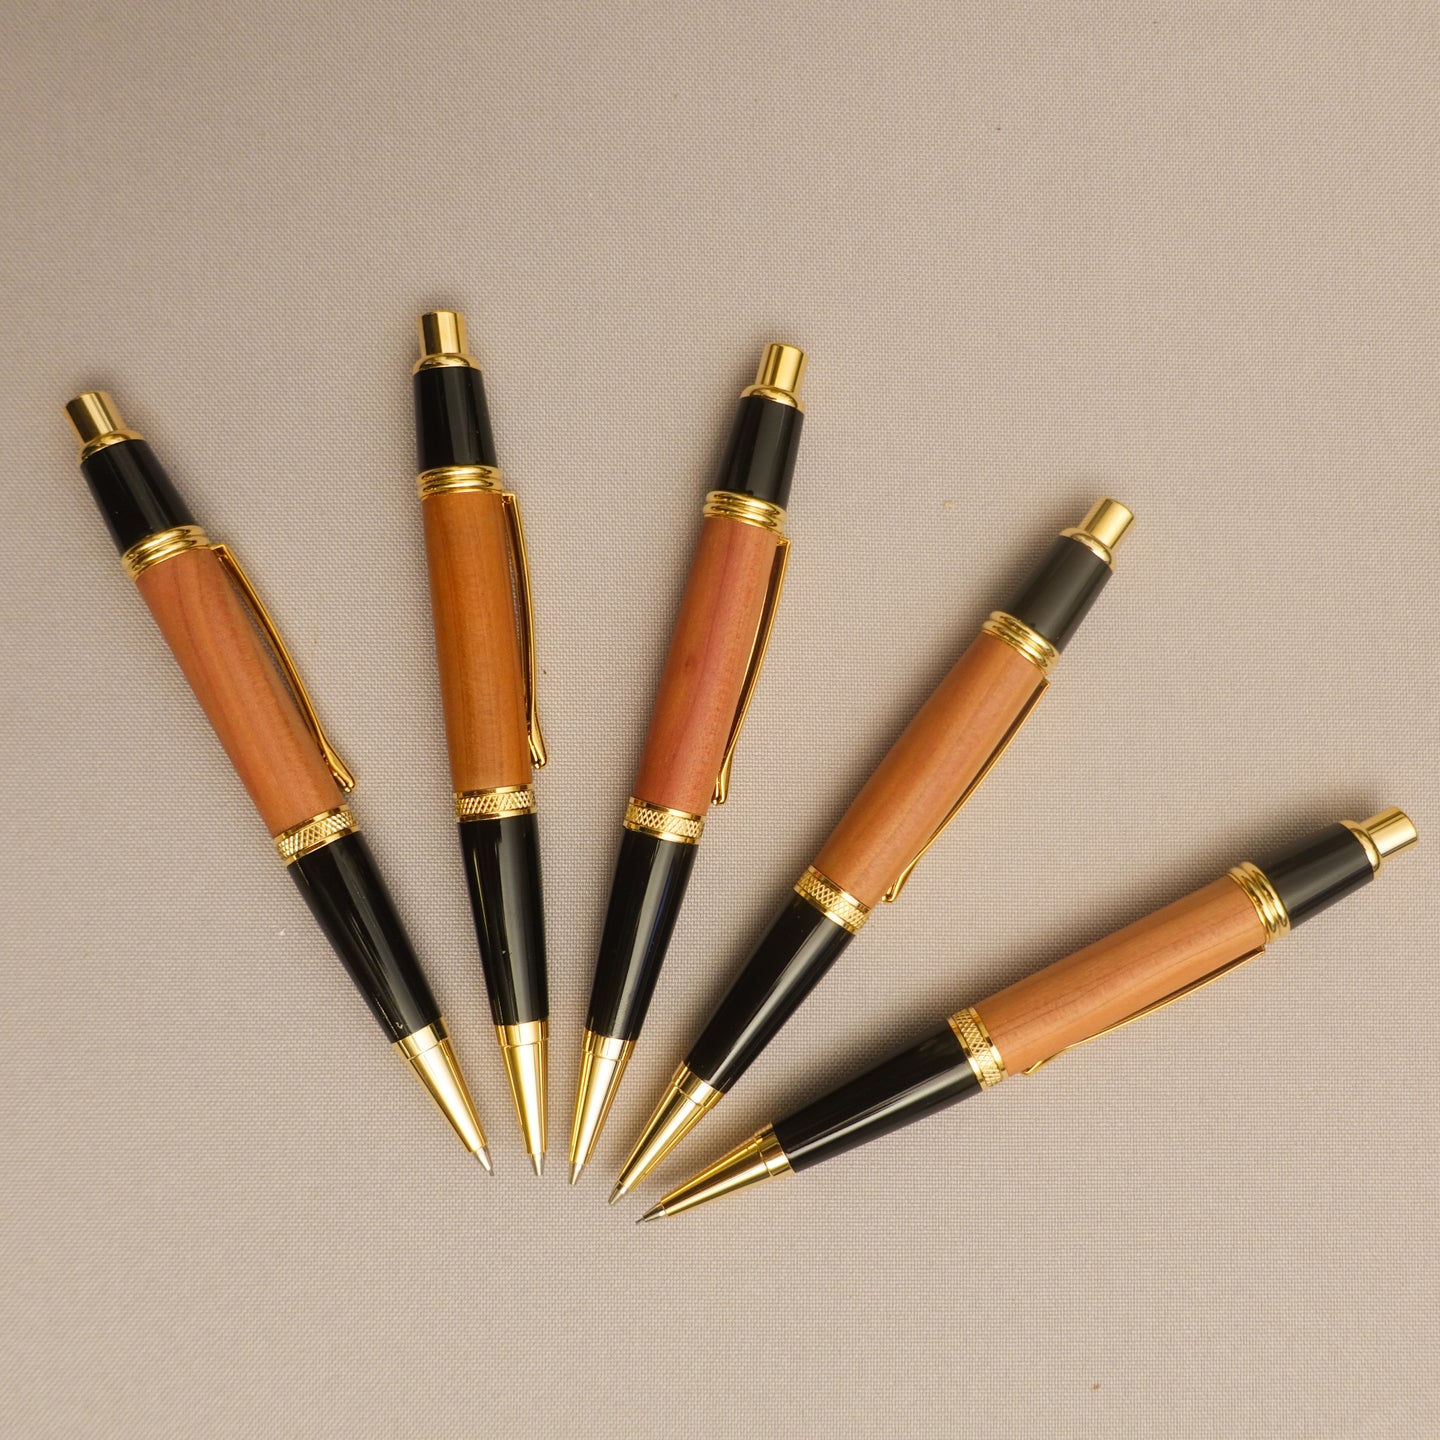 Executive Mechanical Pencil